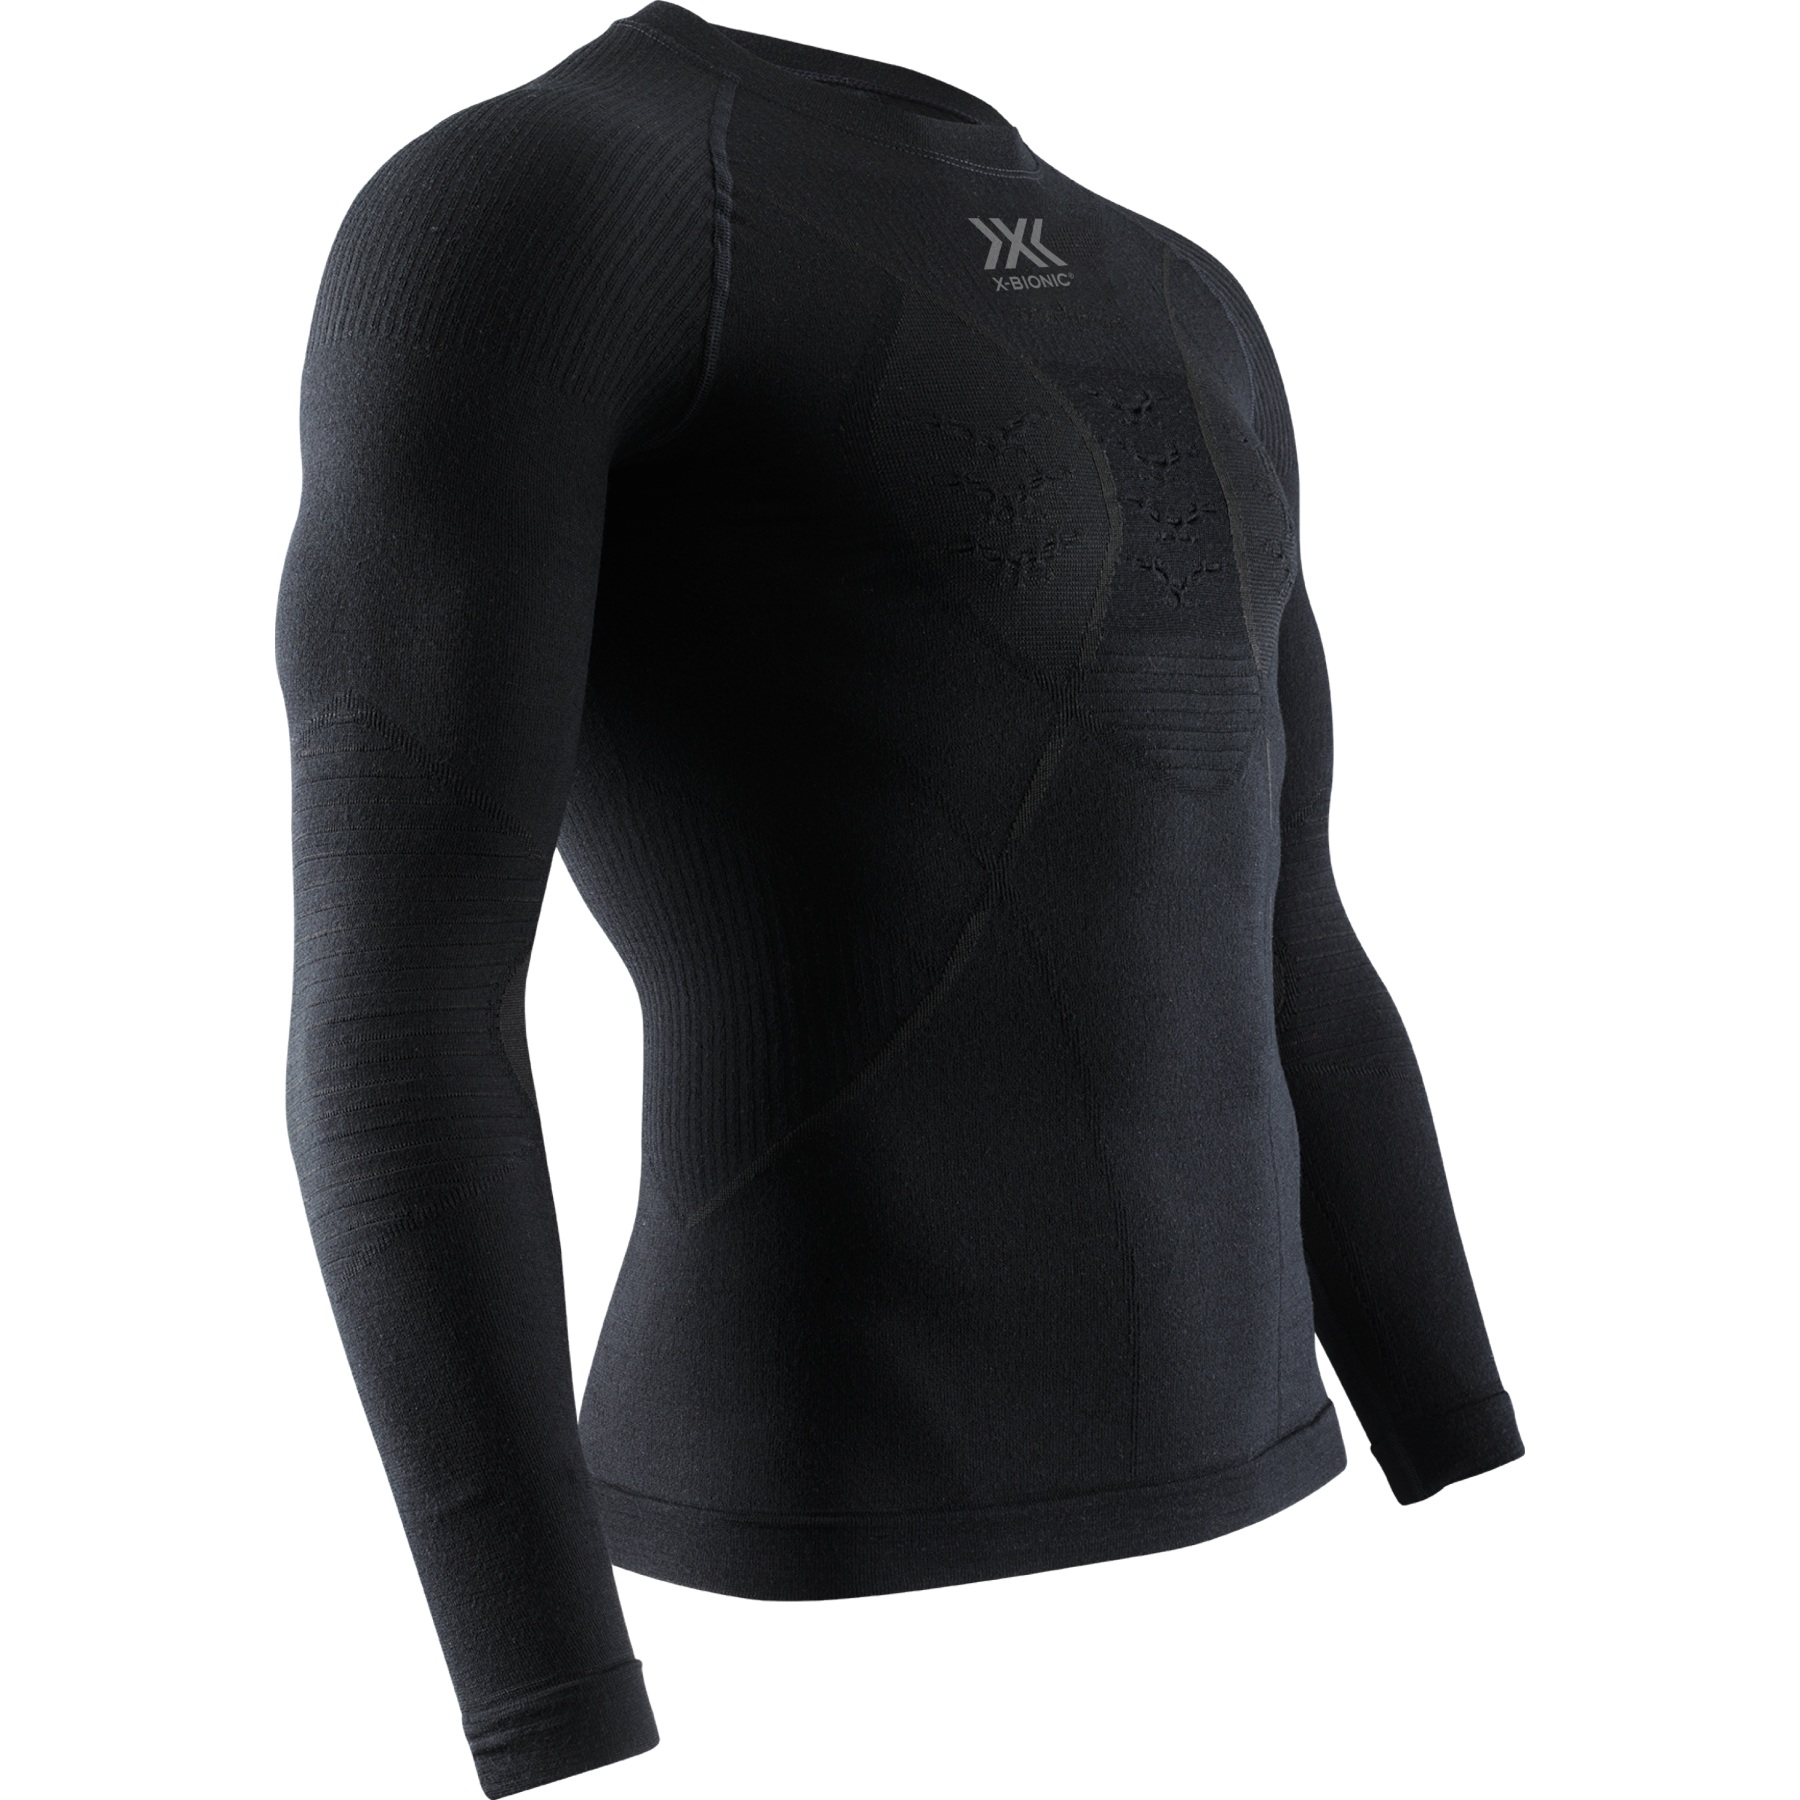 Productfoto van X-Bionic Merino Onderhemd met lange mouwen Heren - zwart/zwart